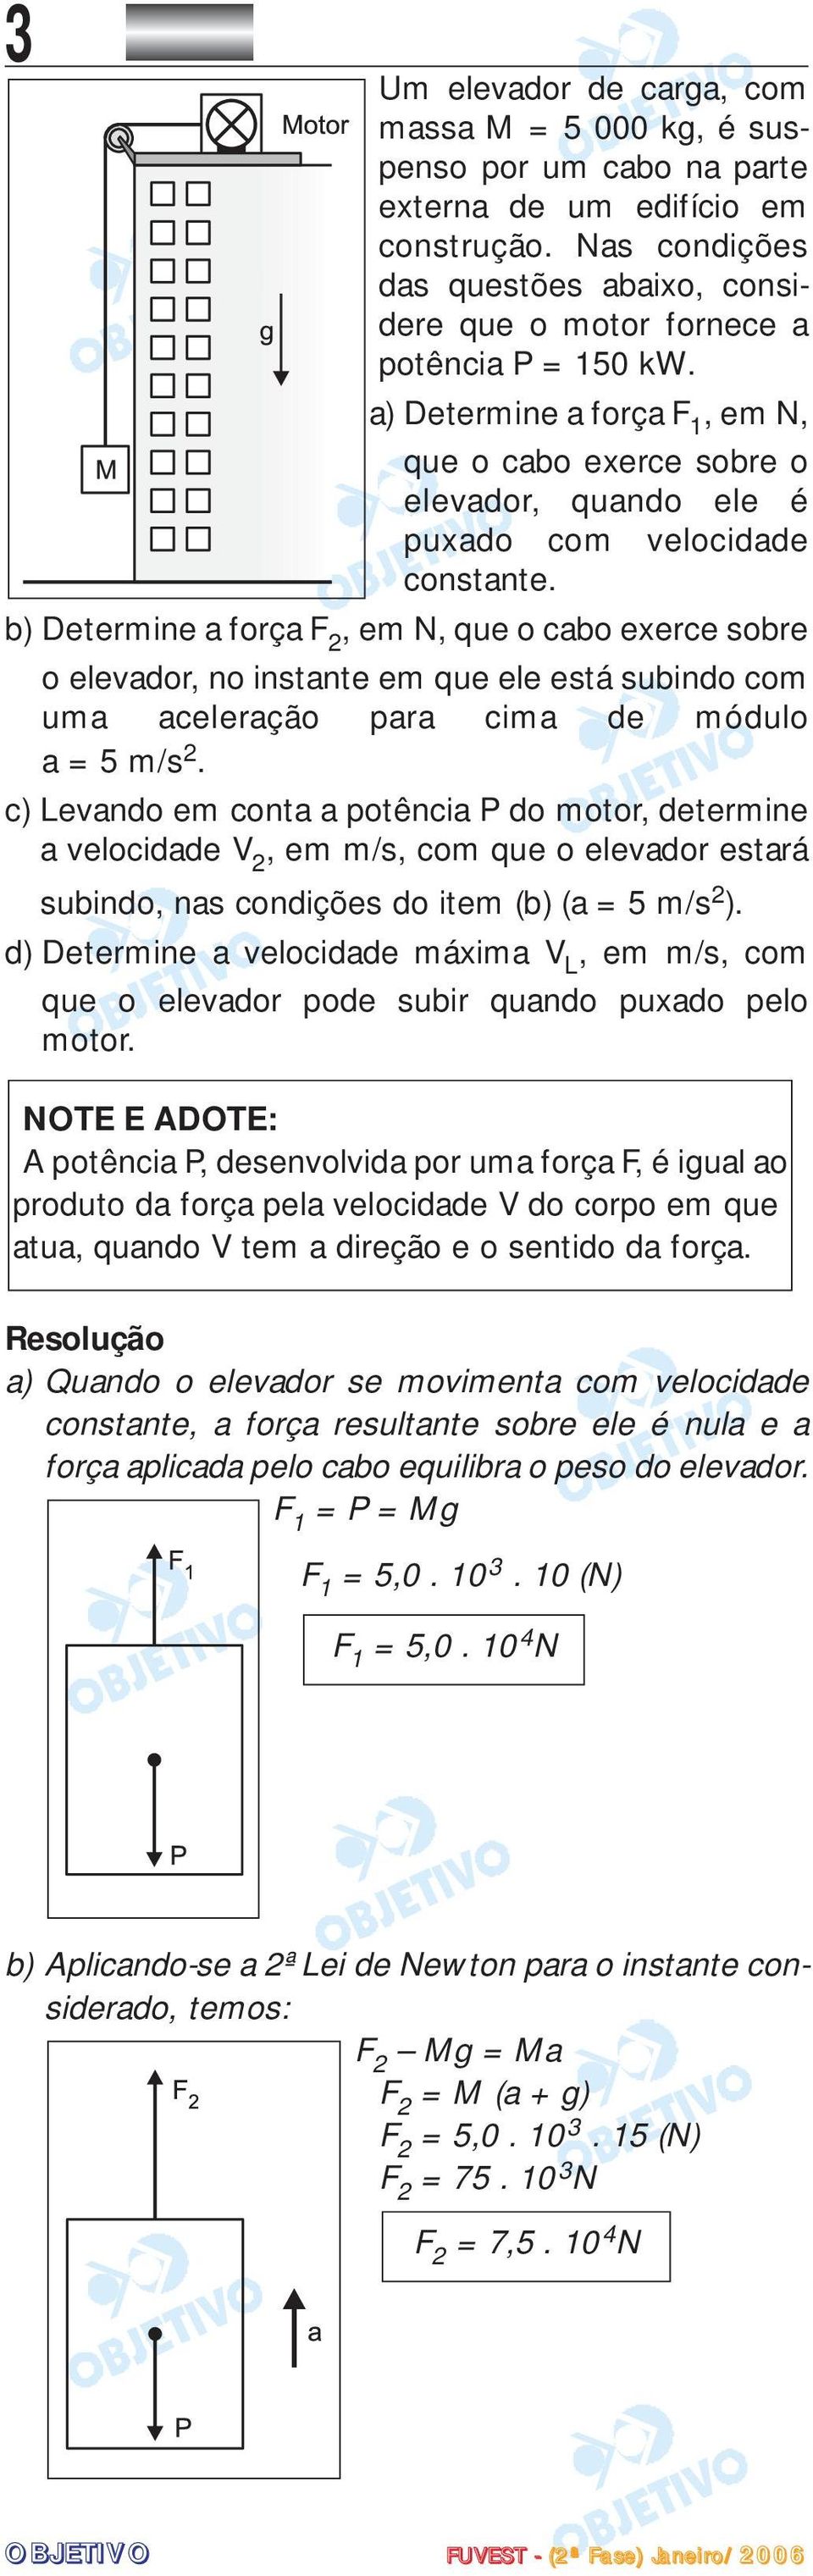 a) Determine a força F 1, em N, que o cabo exerce sobre o elevador, quando ele é puxado com velocidade constante.